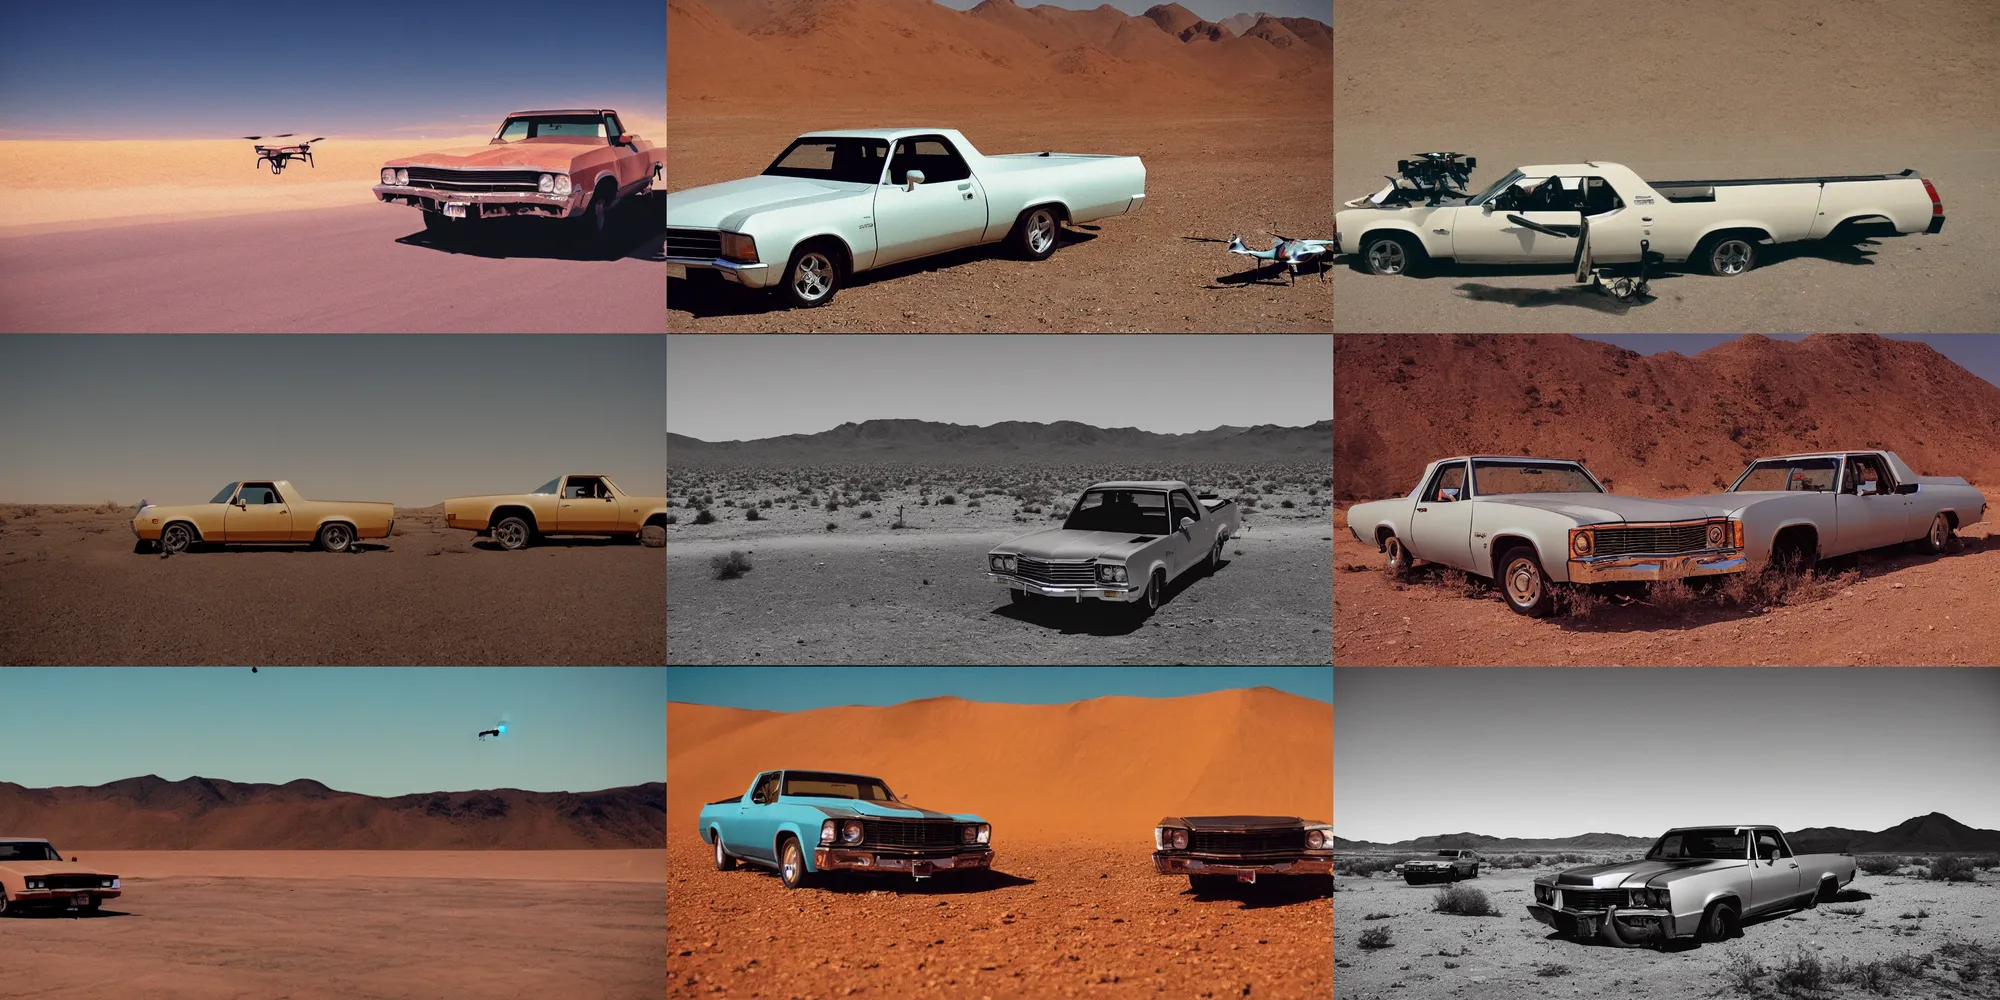 Prompt: drone strike on an el camino classic car, desert landscape, cinestill 8 0 0 t, movie still, film grain